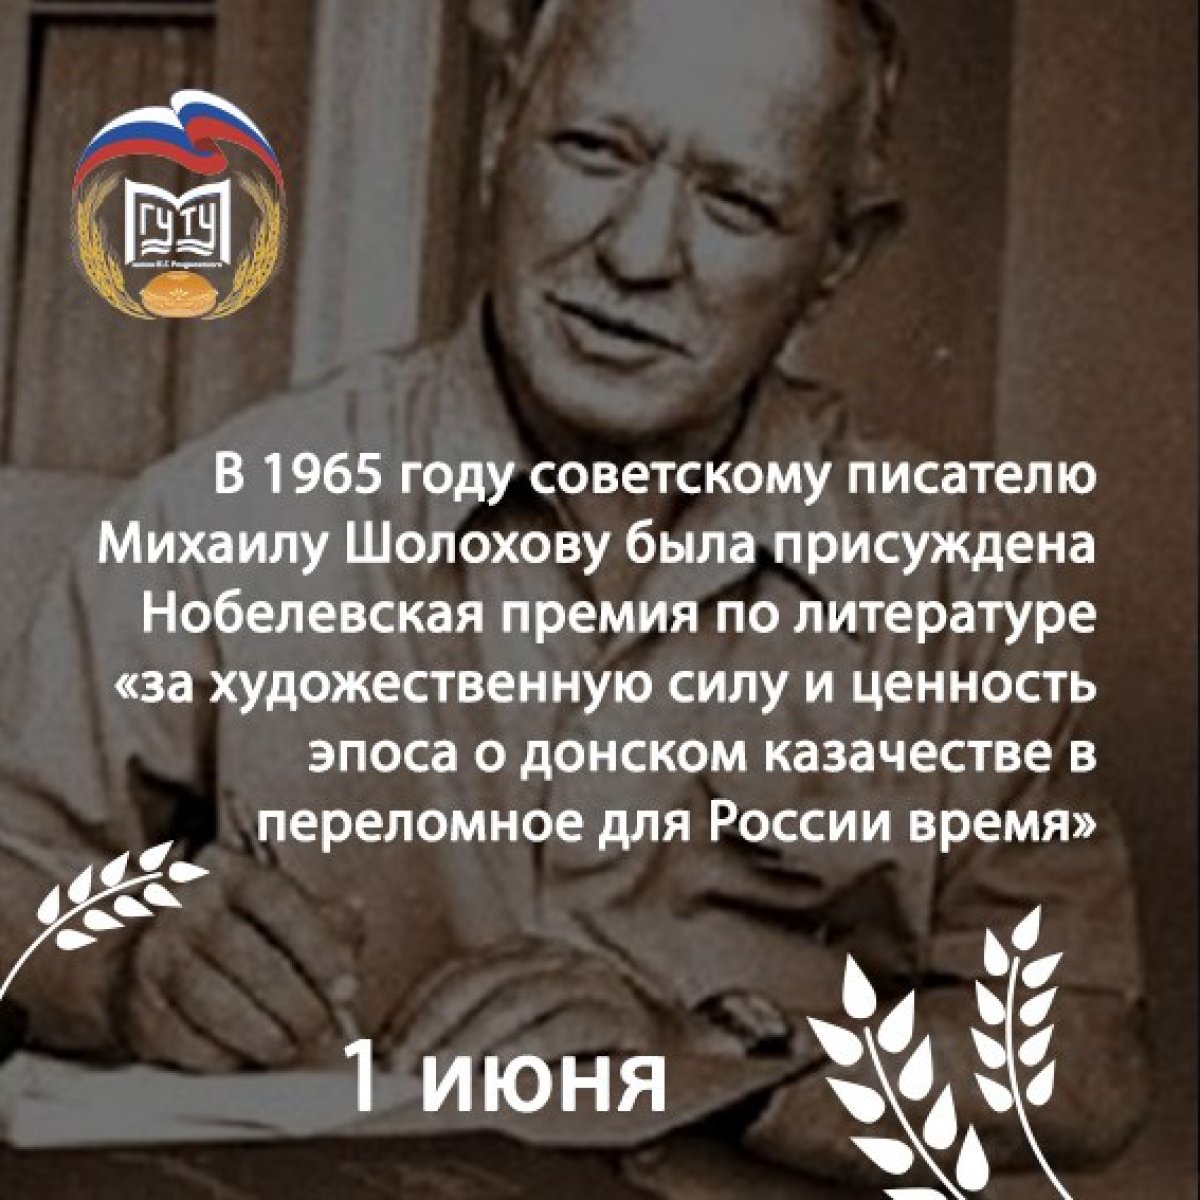 👉Михаил Шолохов родился 11 (24) мая 1905 года на хуторе Кружилин (ныне Ростовская обл.) в семье служащего торгового предприятия